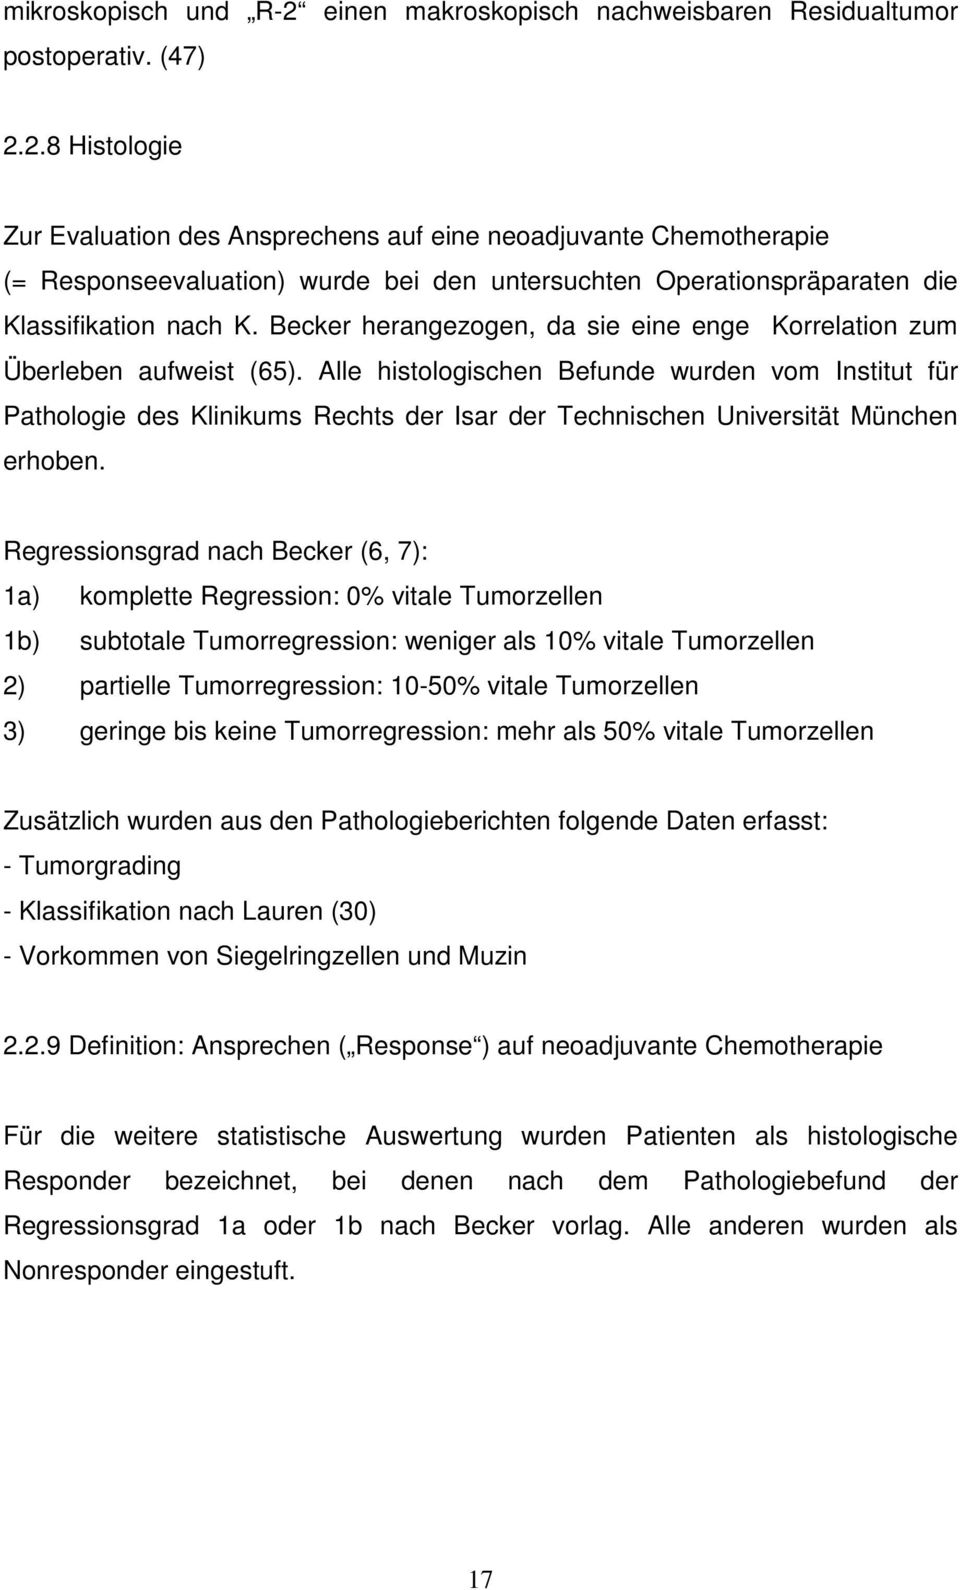 Alle histologischen Befunde wurden vom Institut für Pathologie des Klinikums Rechts der Isar der Technischen Universität München erhoben.